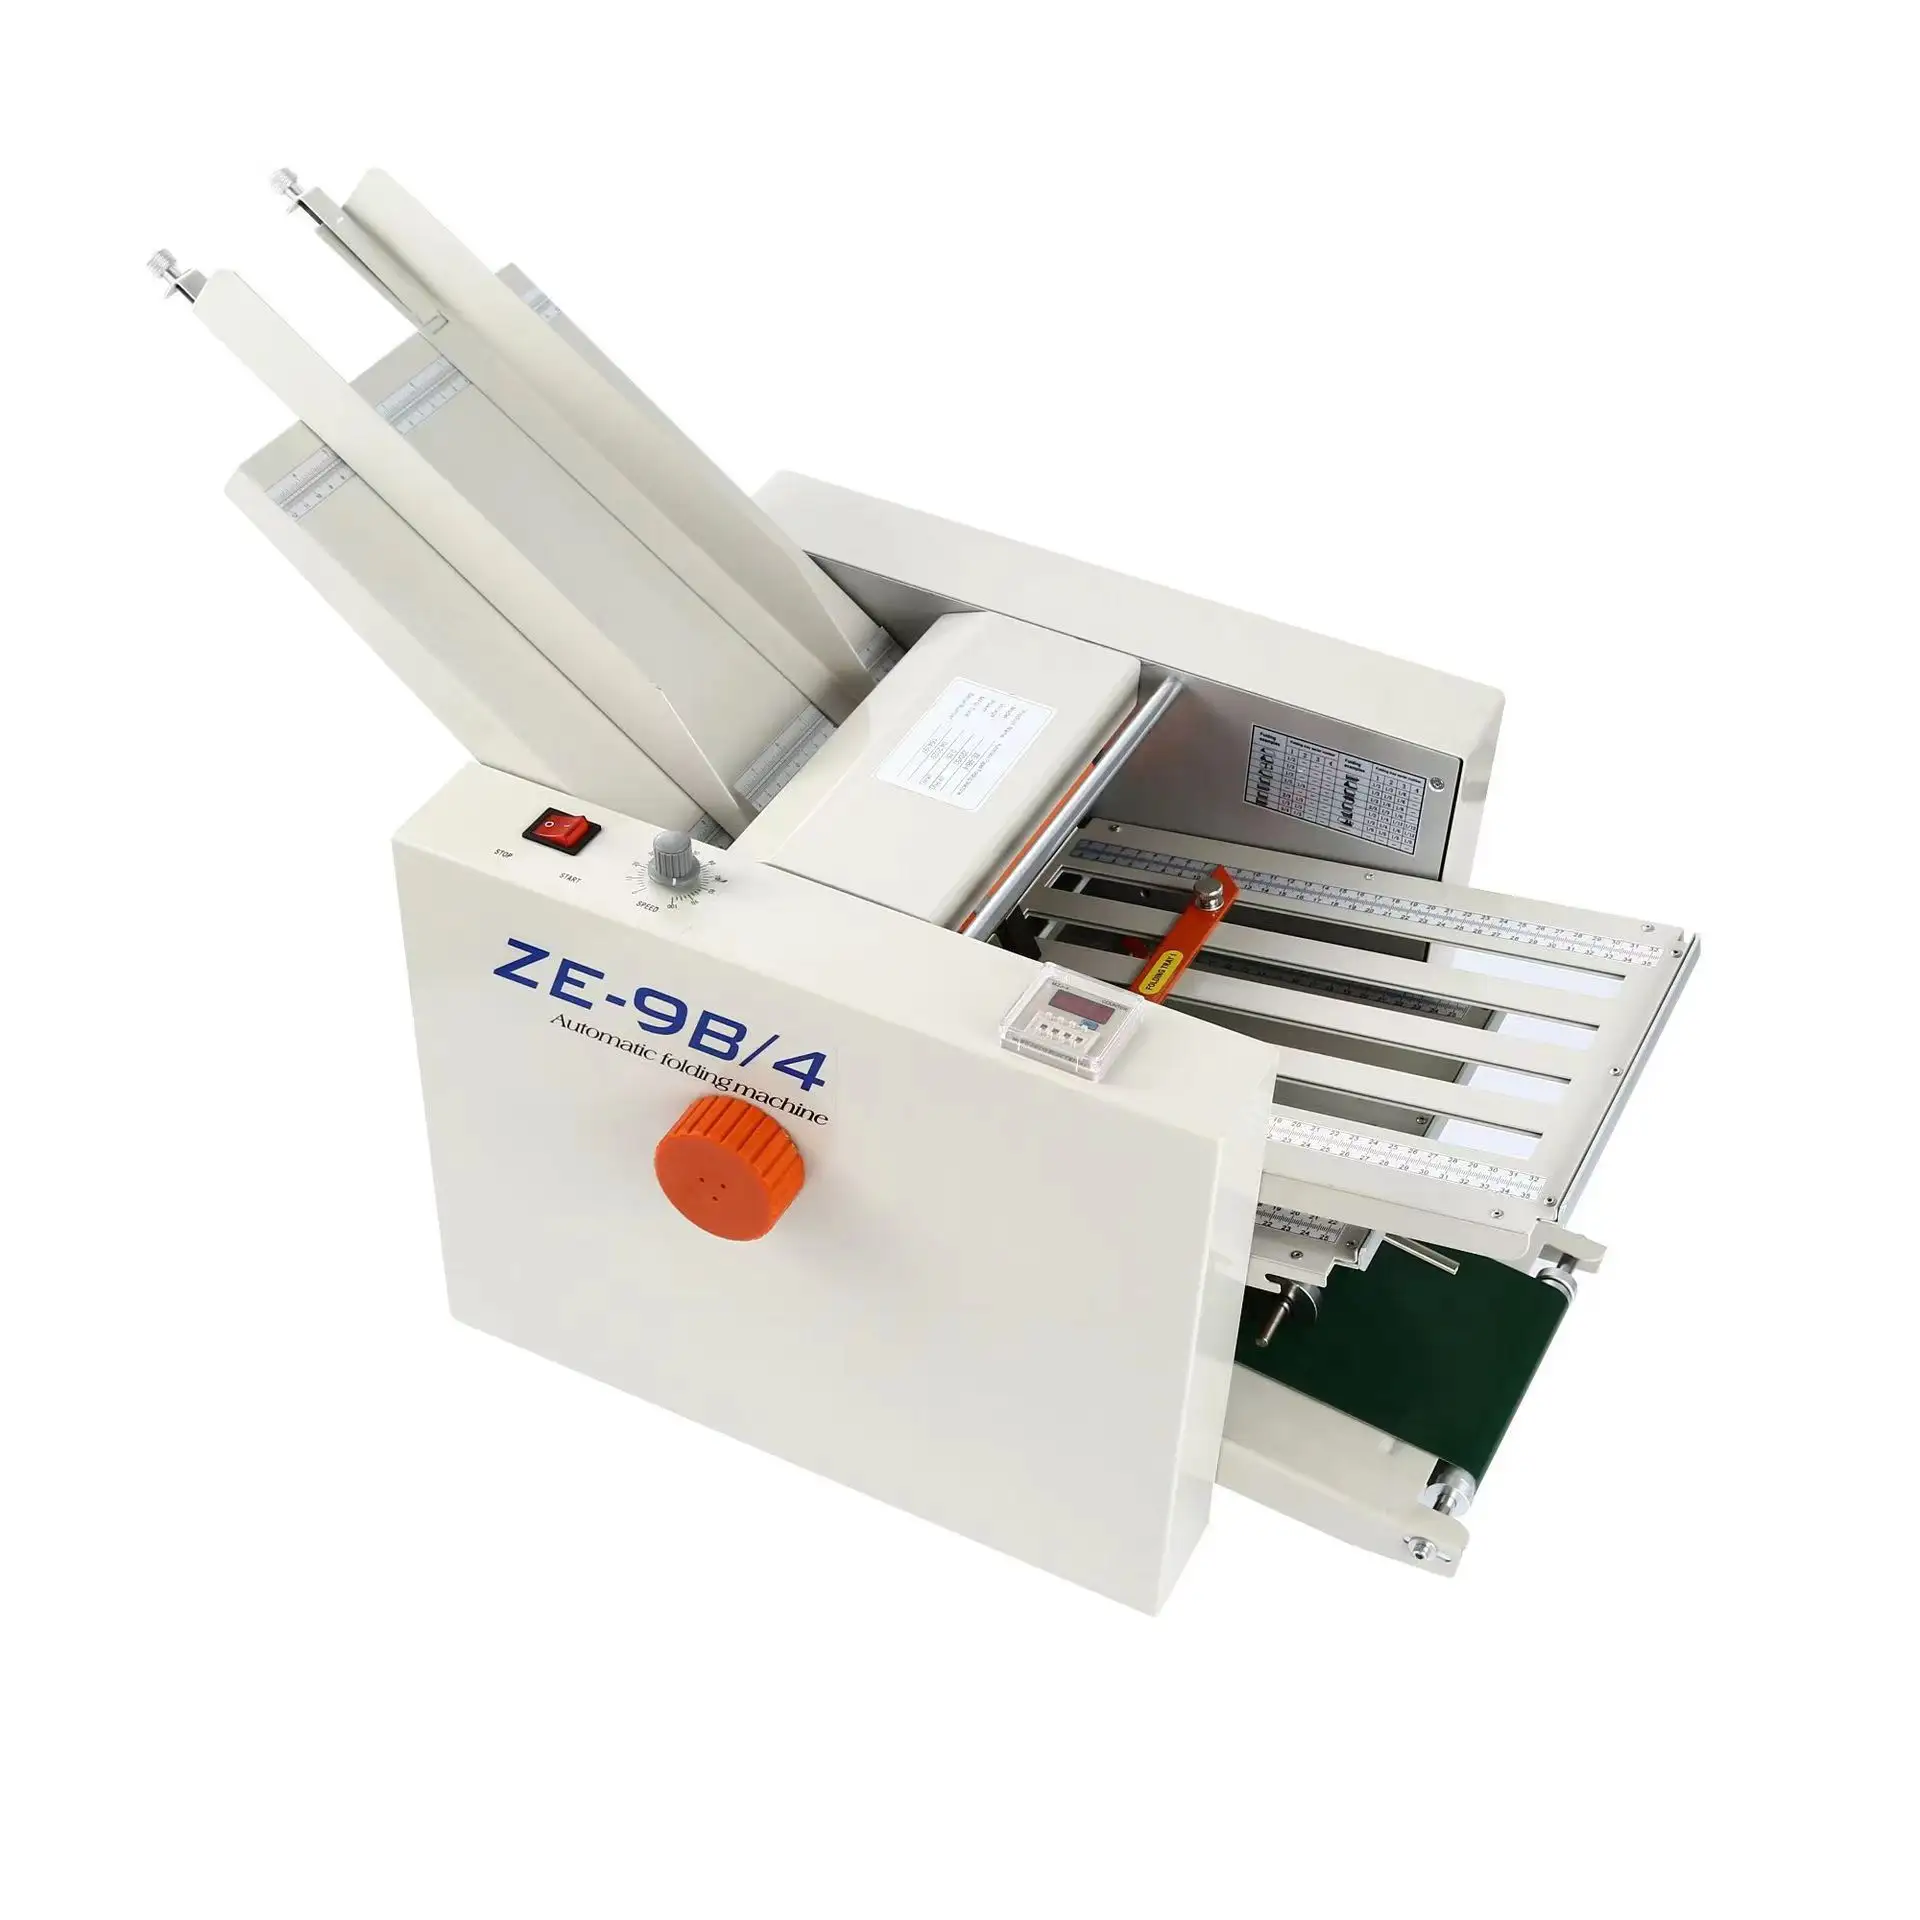 Sanying commerciale automatico ZE 9B/4 automatico cartella di carta istruzioni catalogo carta Multi piegatrice